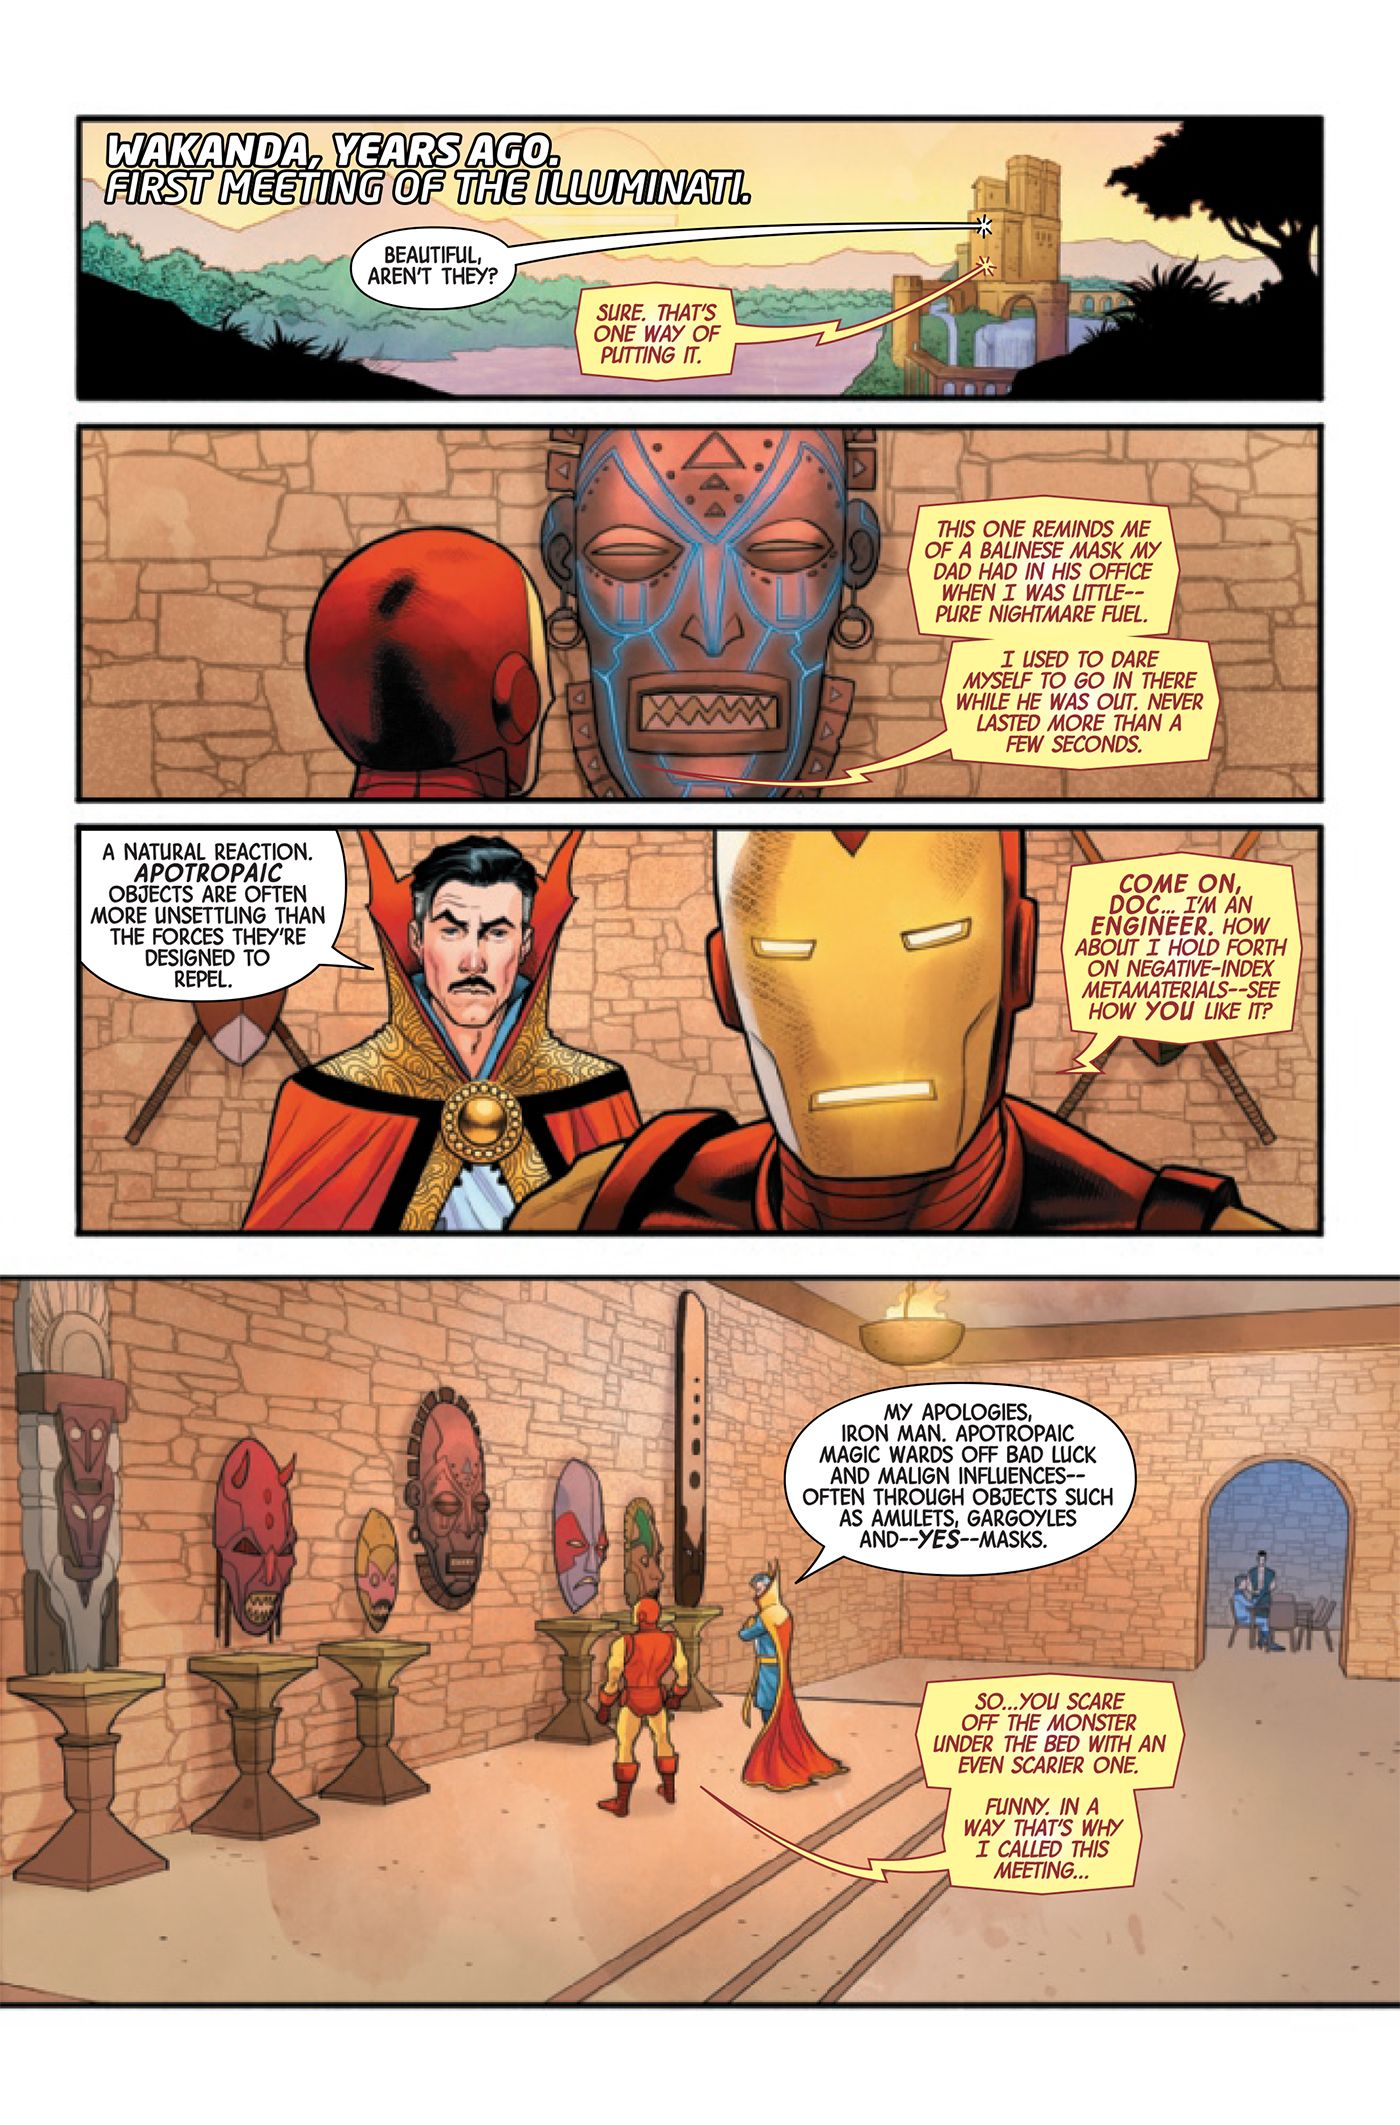 Iron Man and Doctor Strange look at a Wakandan mask.